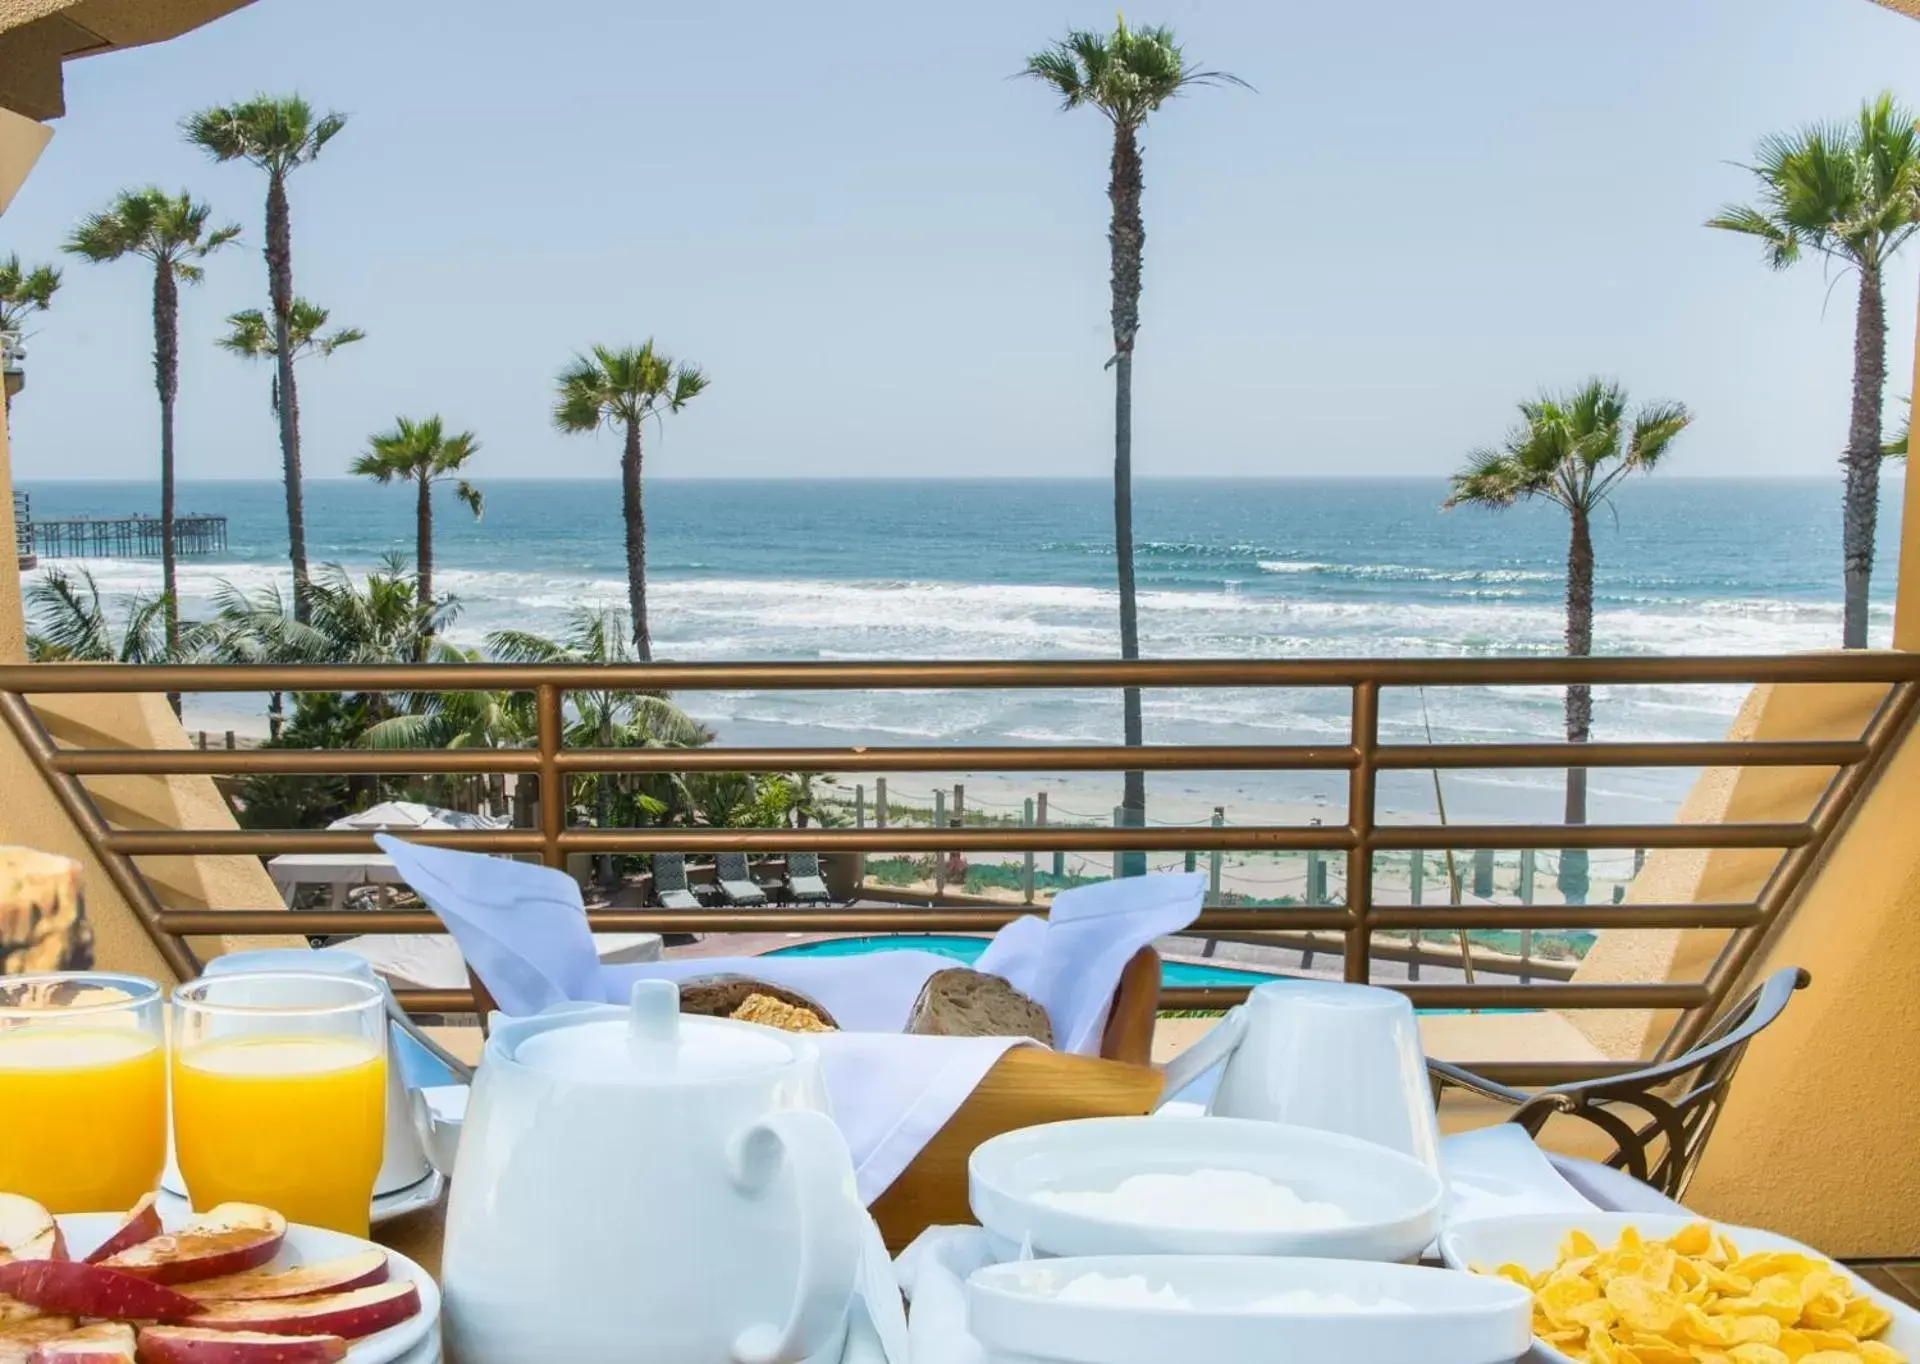 Breakfast in Pacific Terrace Hotel